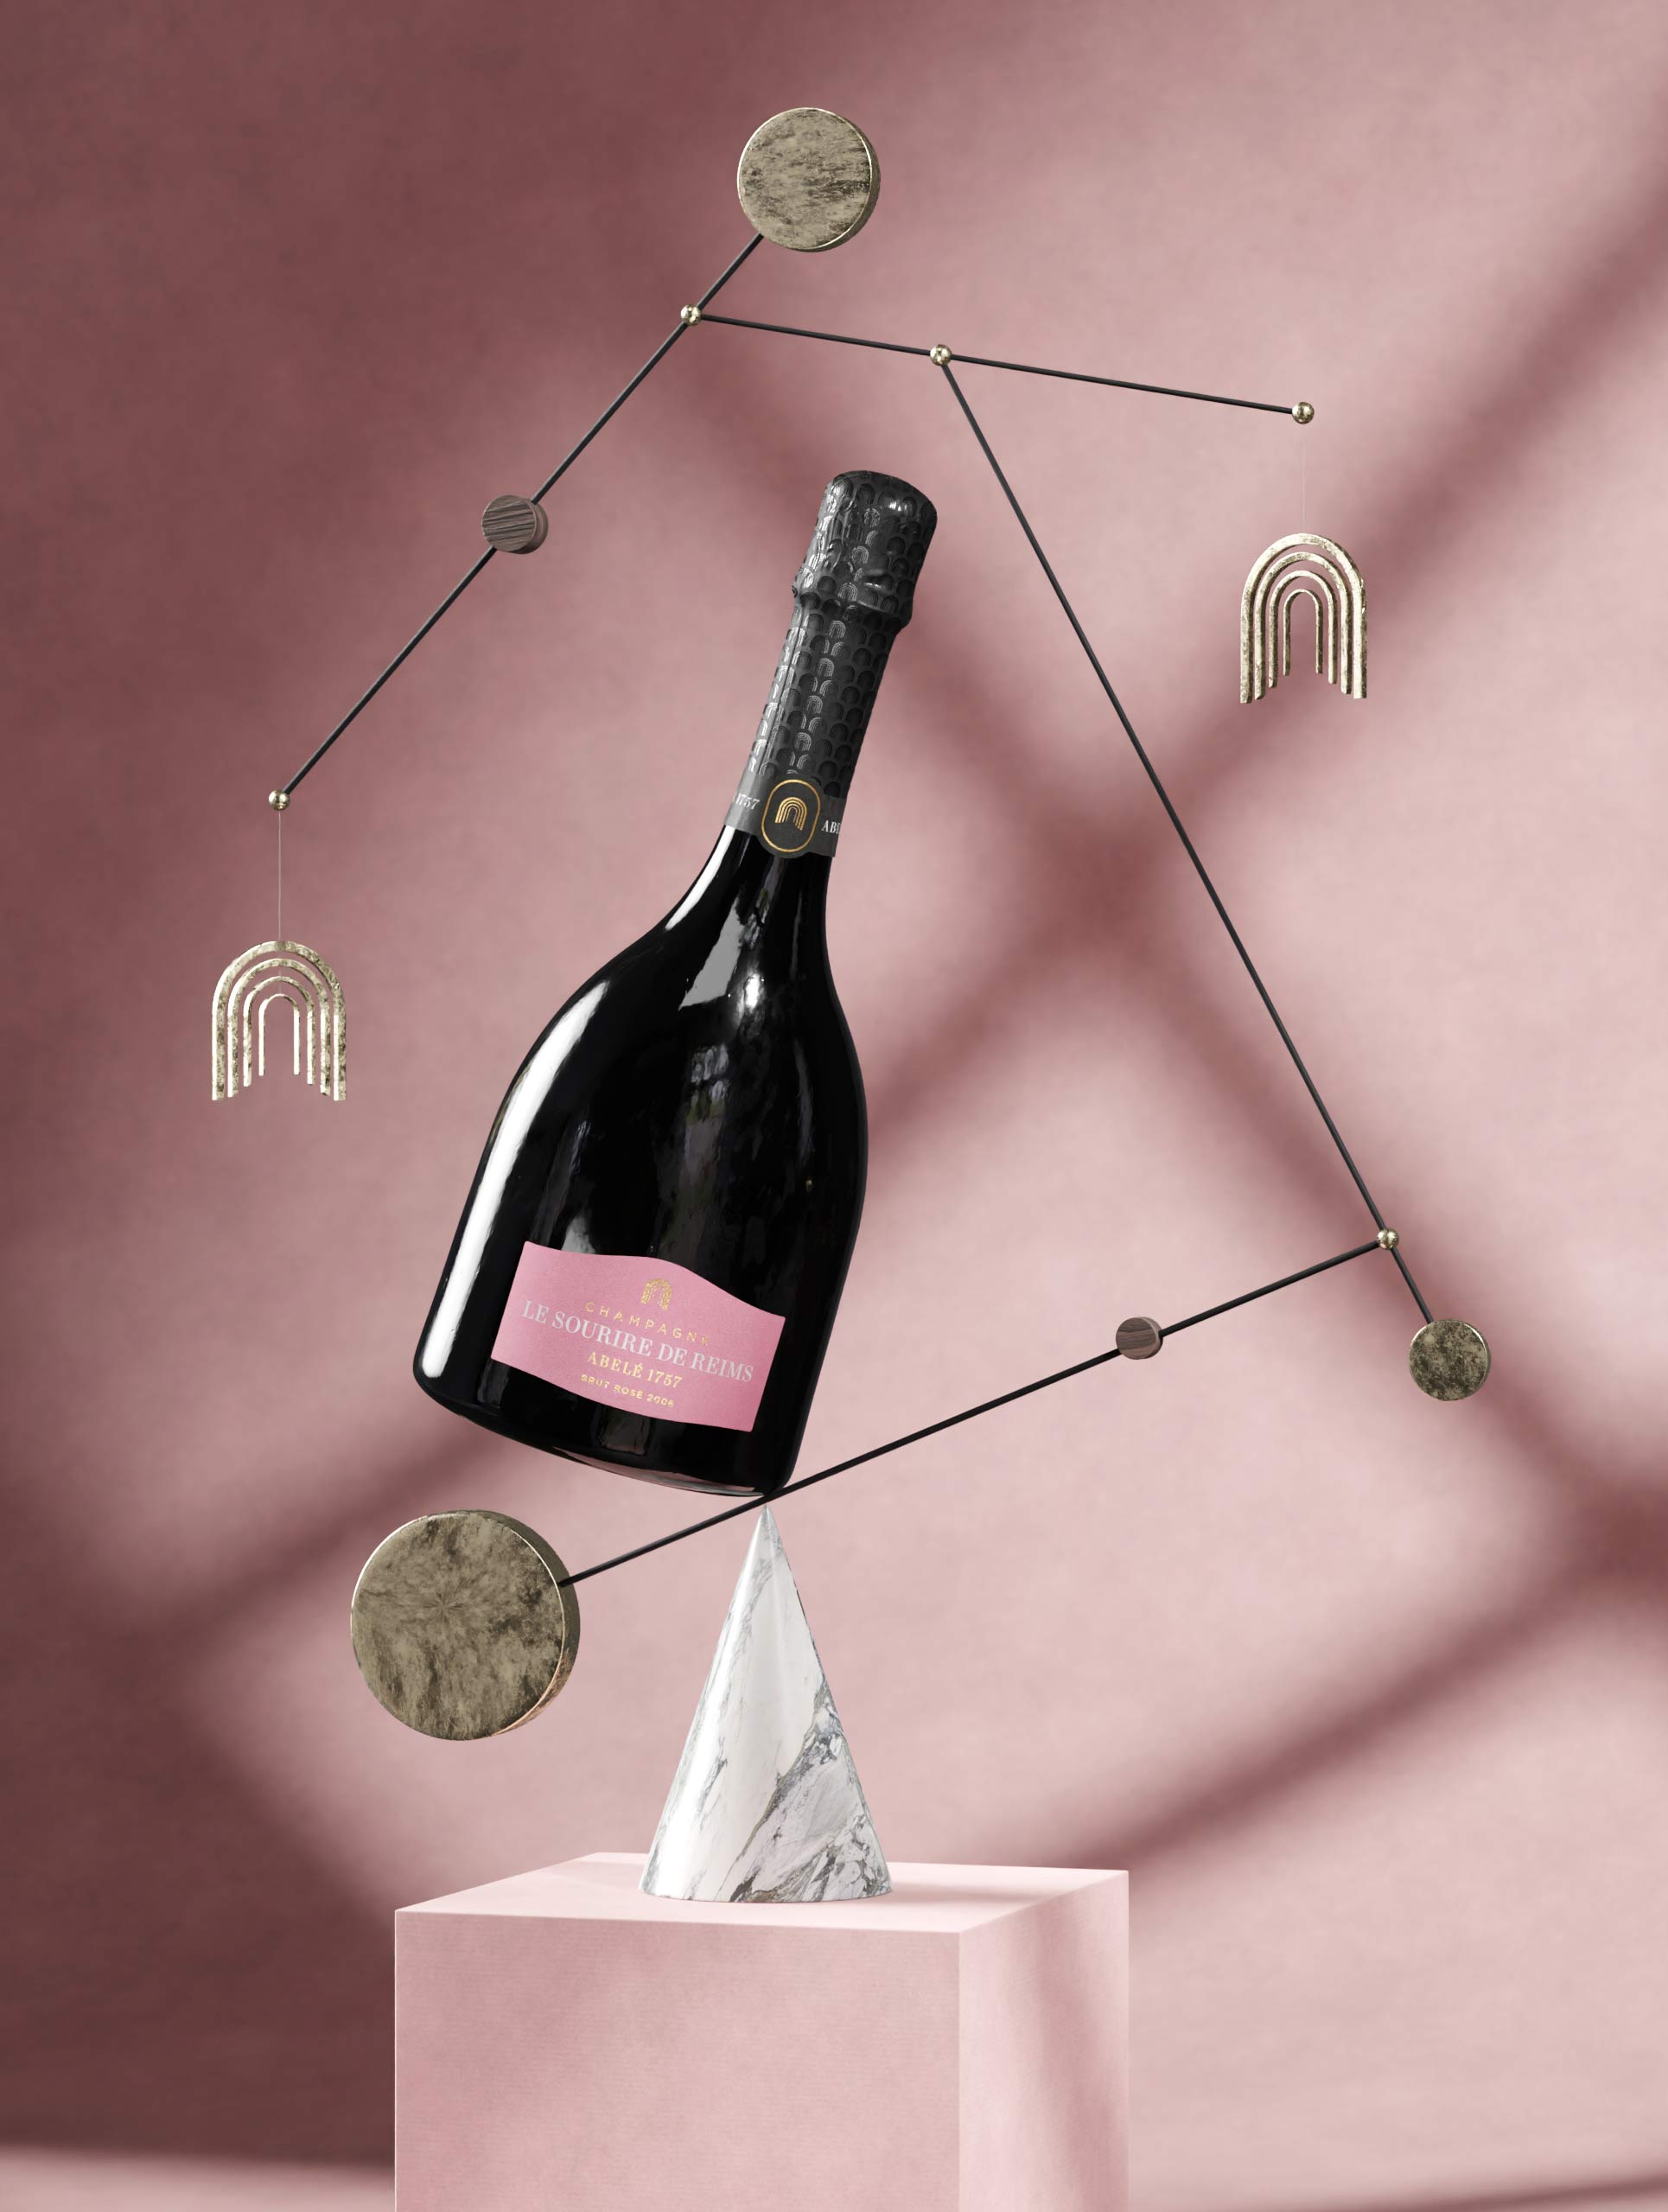 Bouteille de Sourire de Reims Rosé en équilibre | Réalisation Agence Discovery